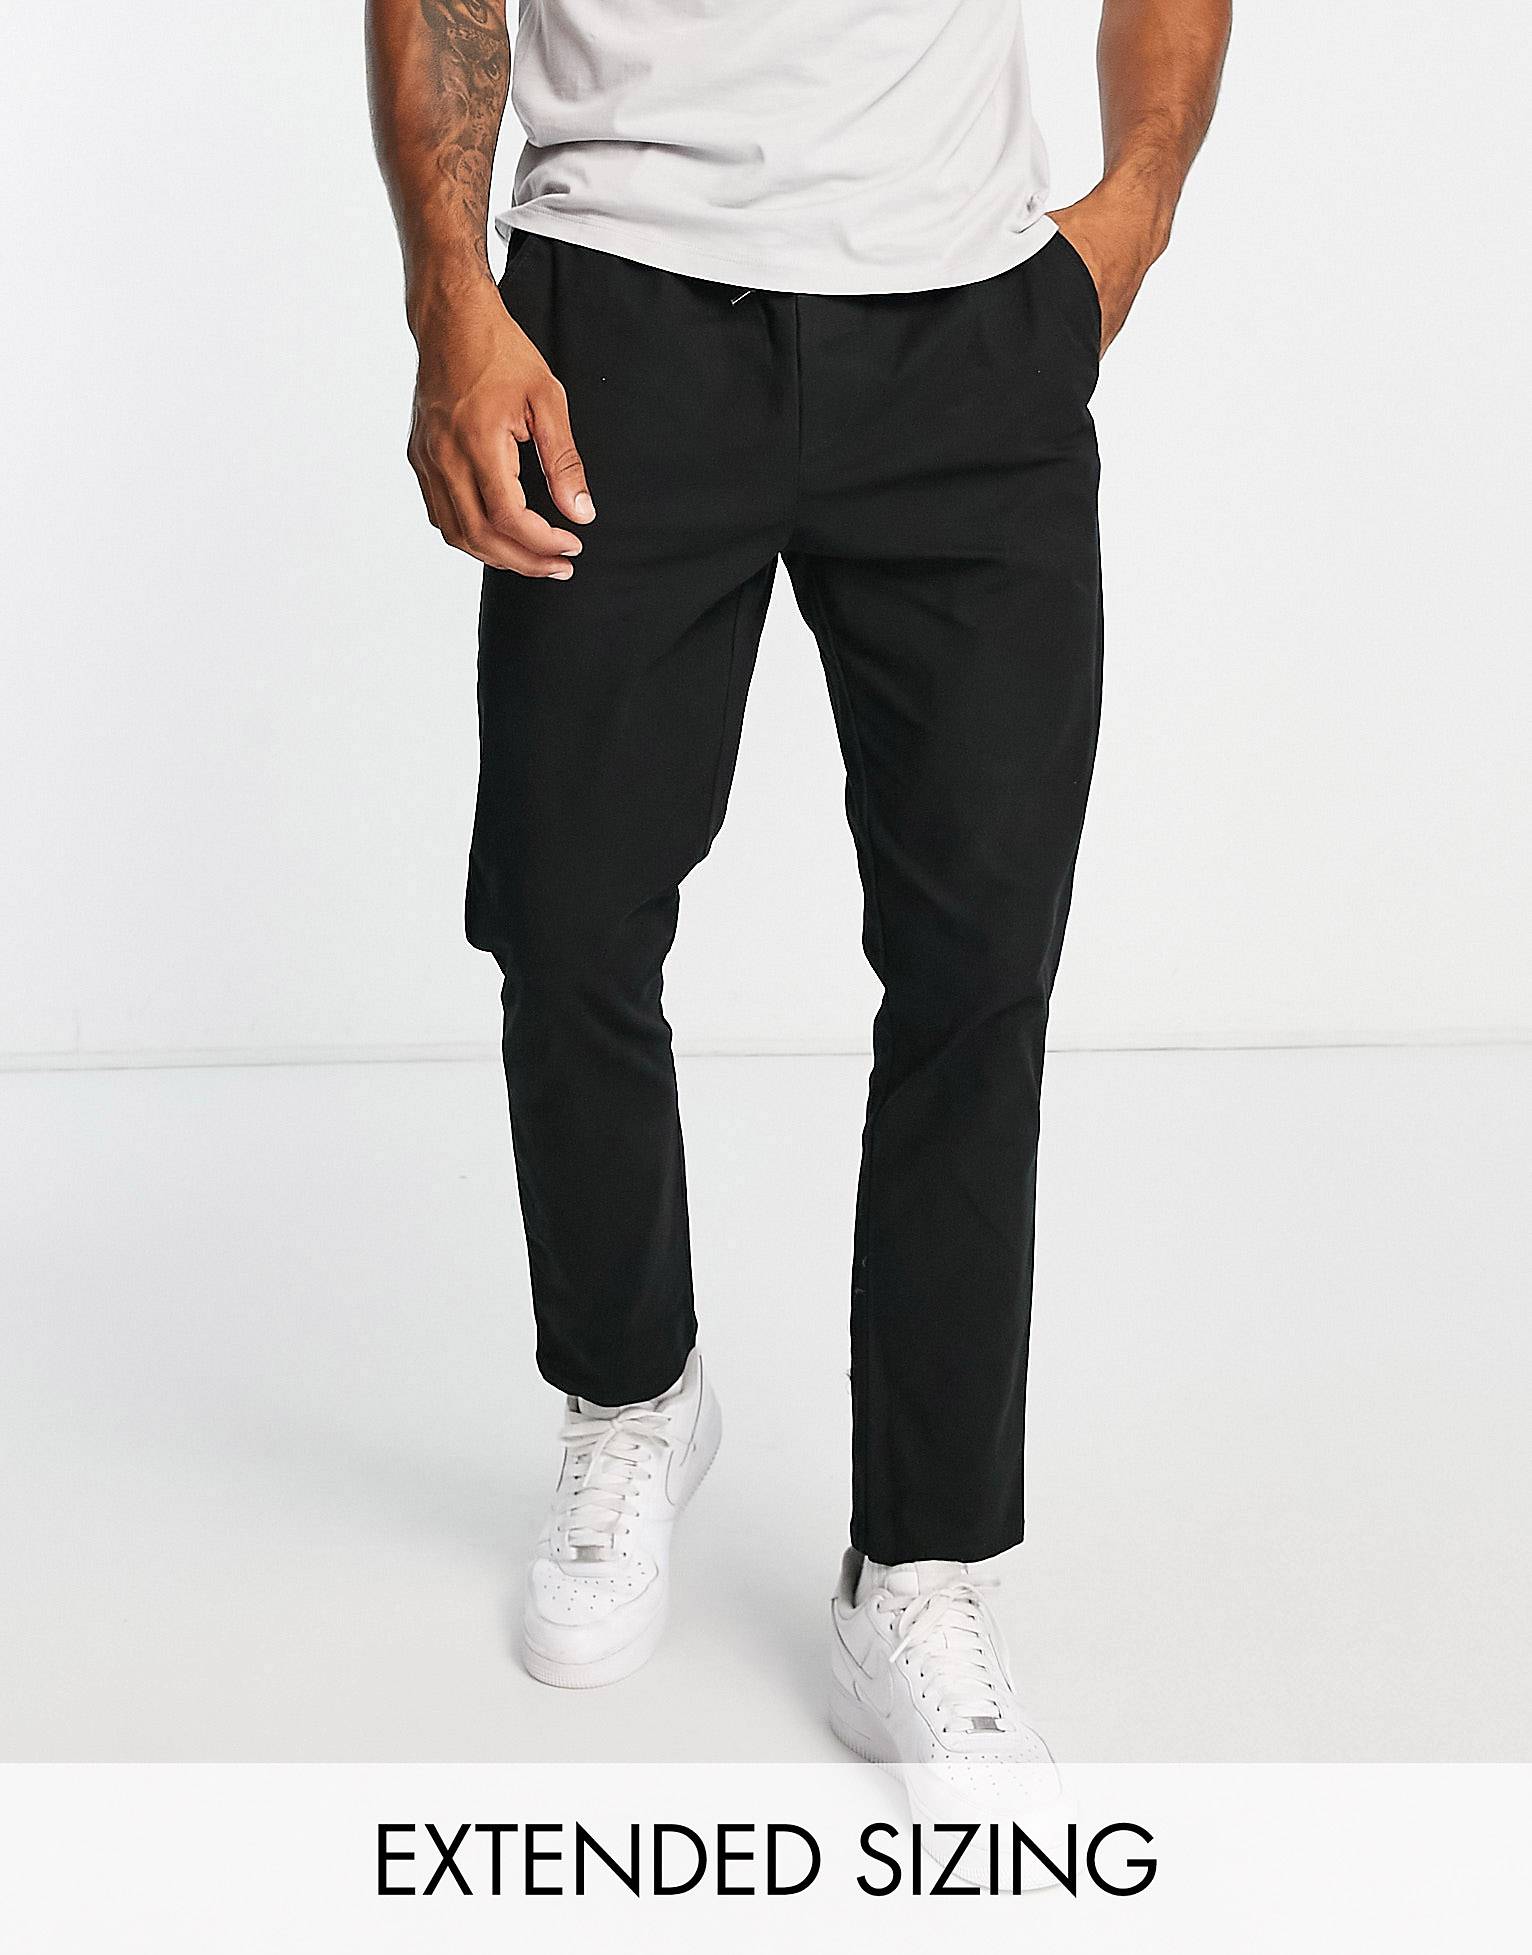 Черные узкие брюки чинос с эластичным поясом ASOS DESIGN